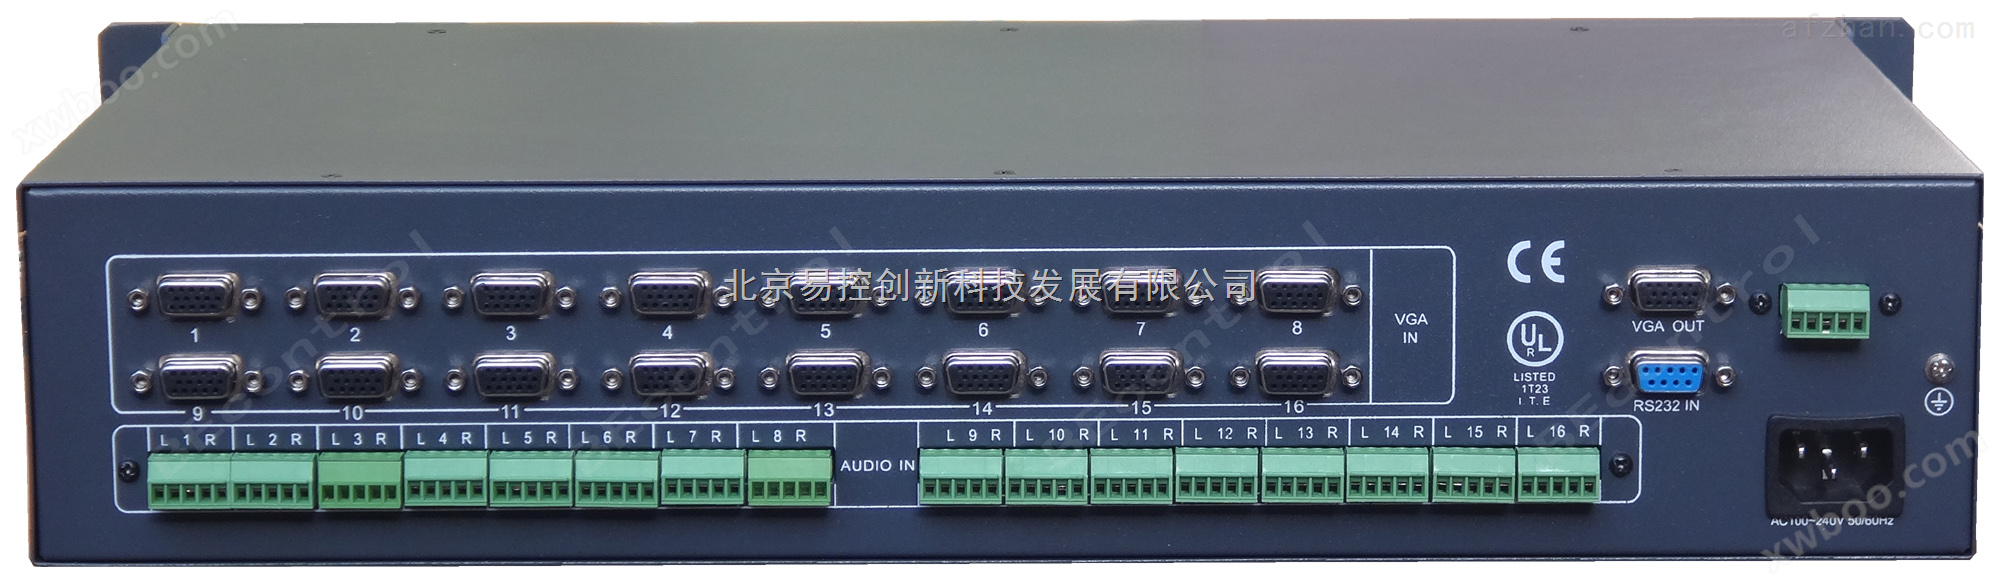 自动VGA切换器 自动识别输入信号切换输出